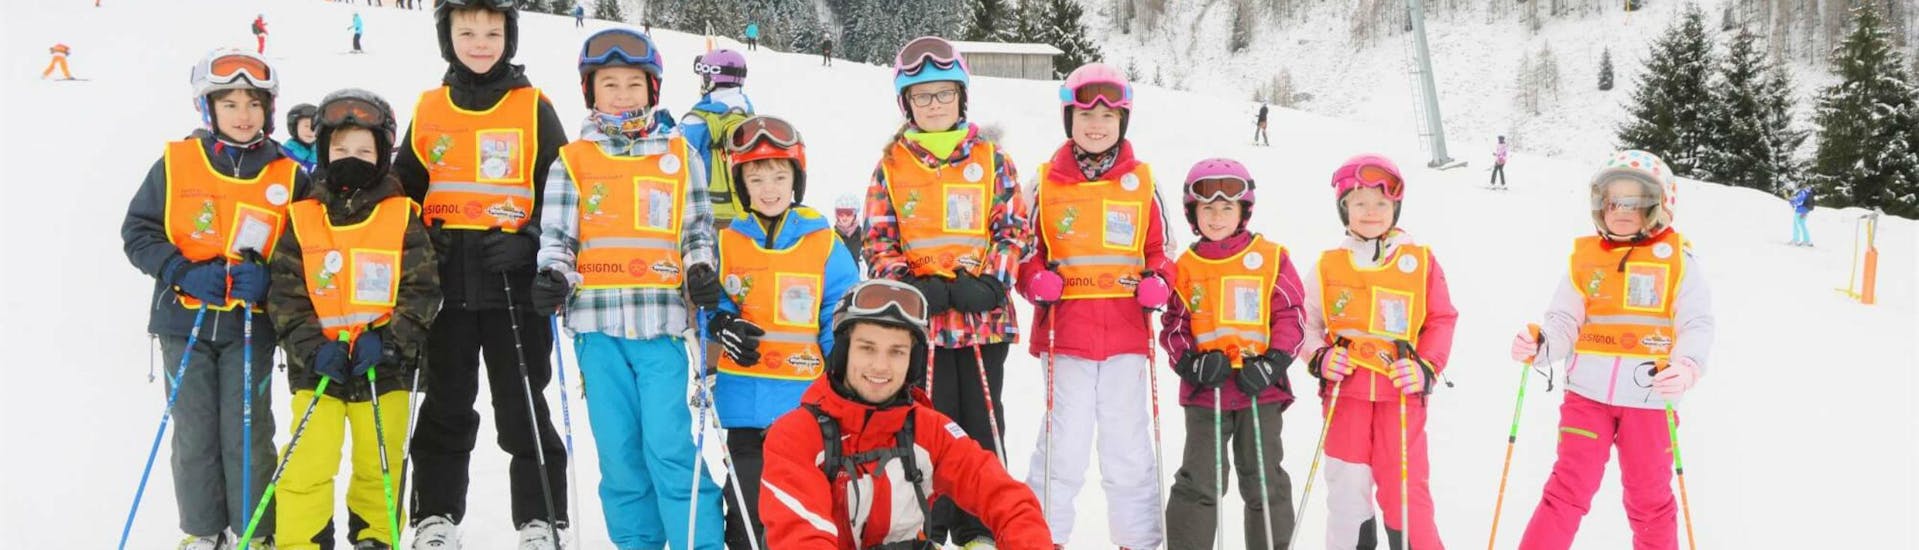 Skilessen voor kinderen "Juniorprogramma" (15-18 jaar).